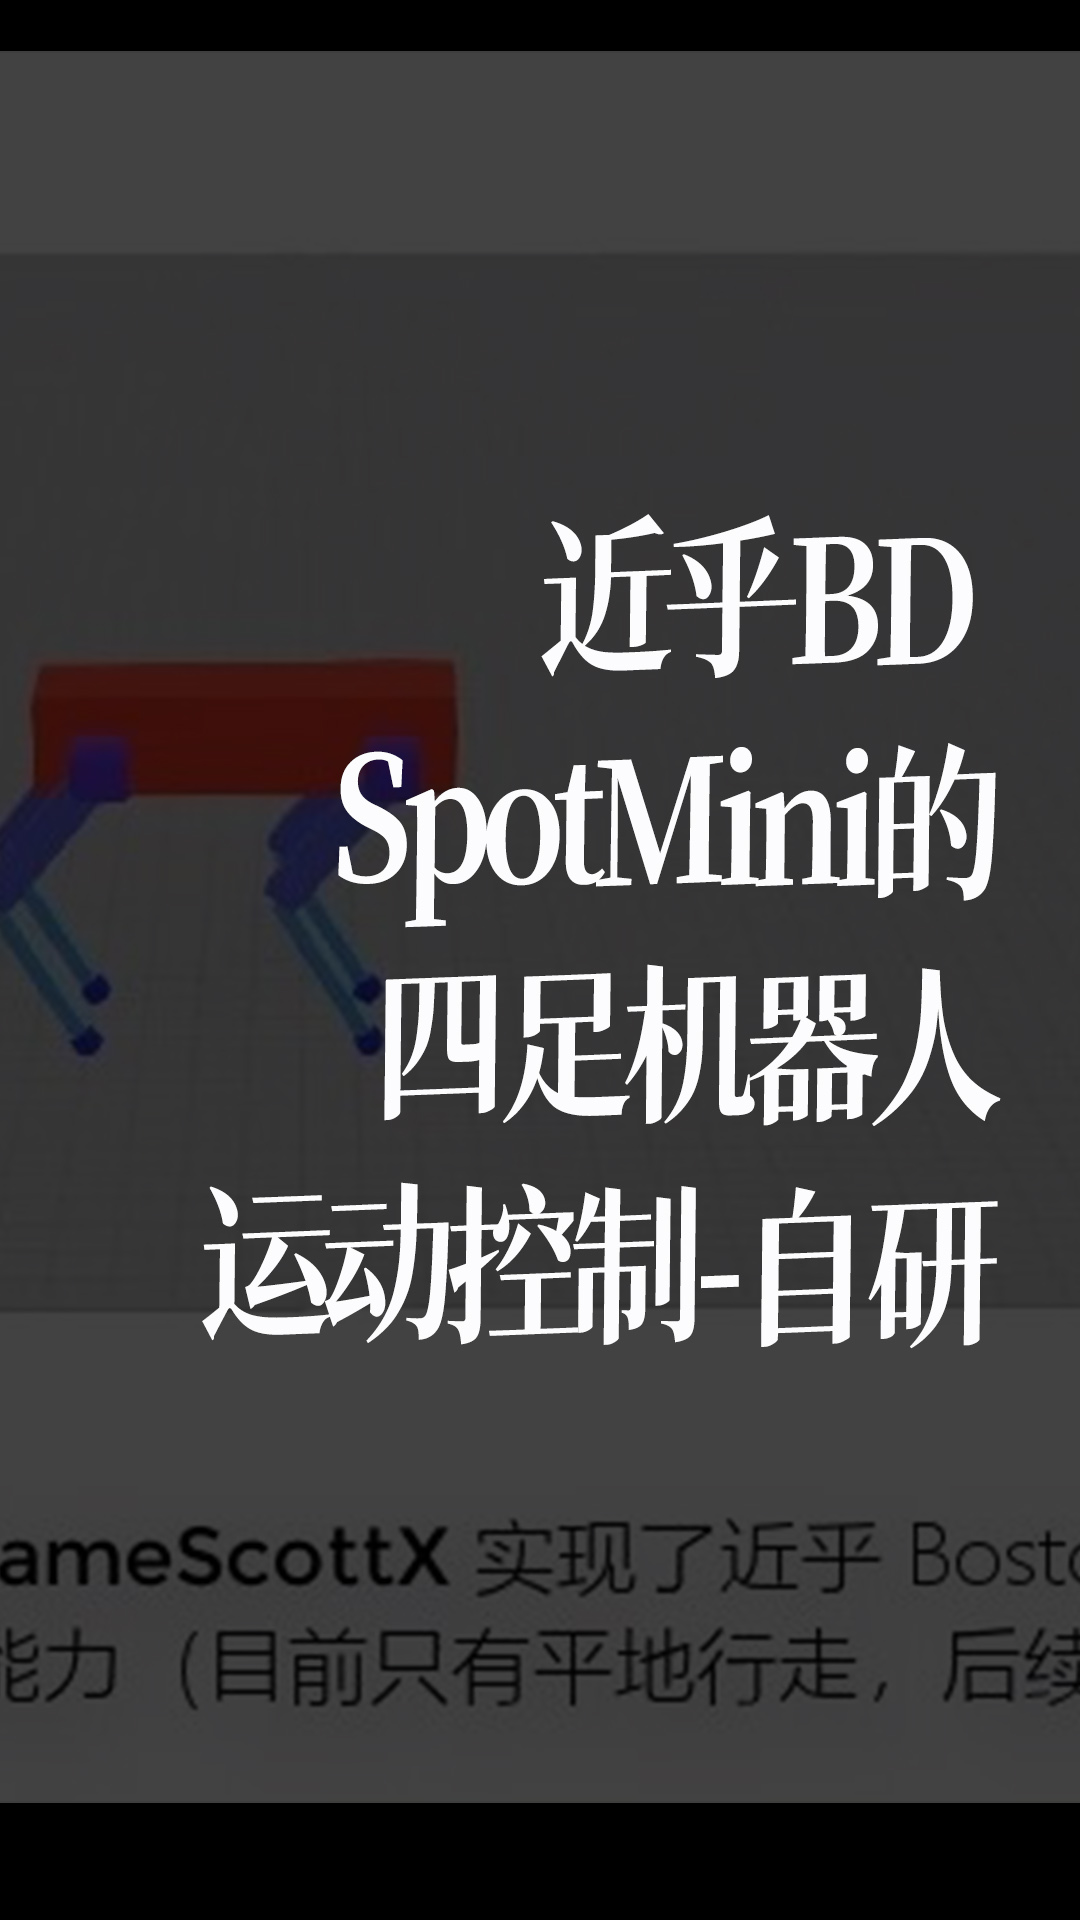 近乎BD SpotMini的四足機器人運動控制-自研 